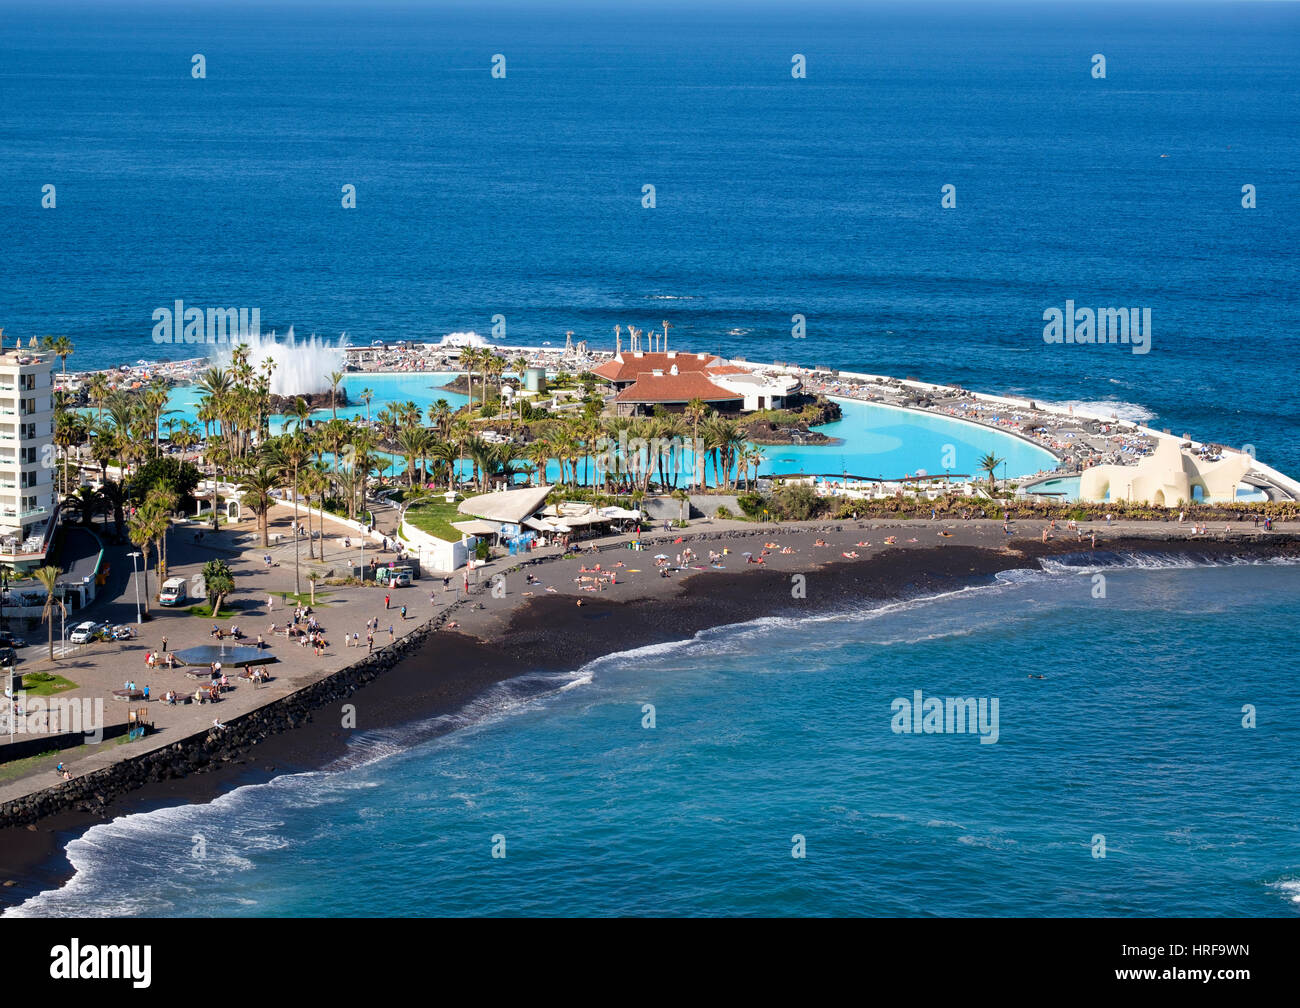 Playa martianez fotografías e imágenes de alta resolución - Alamy